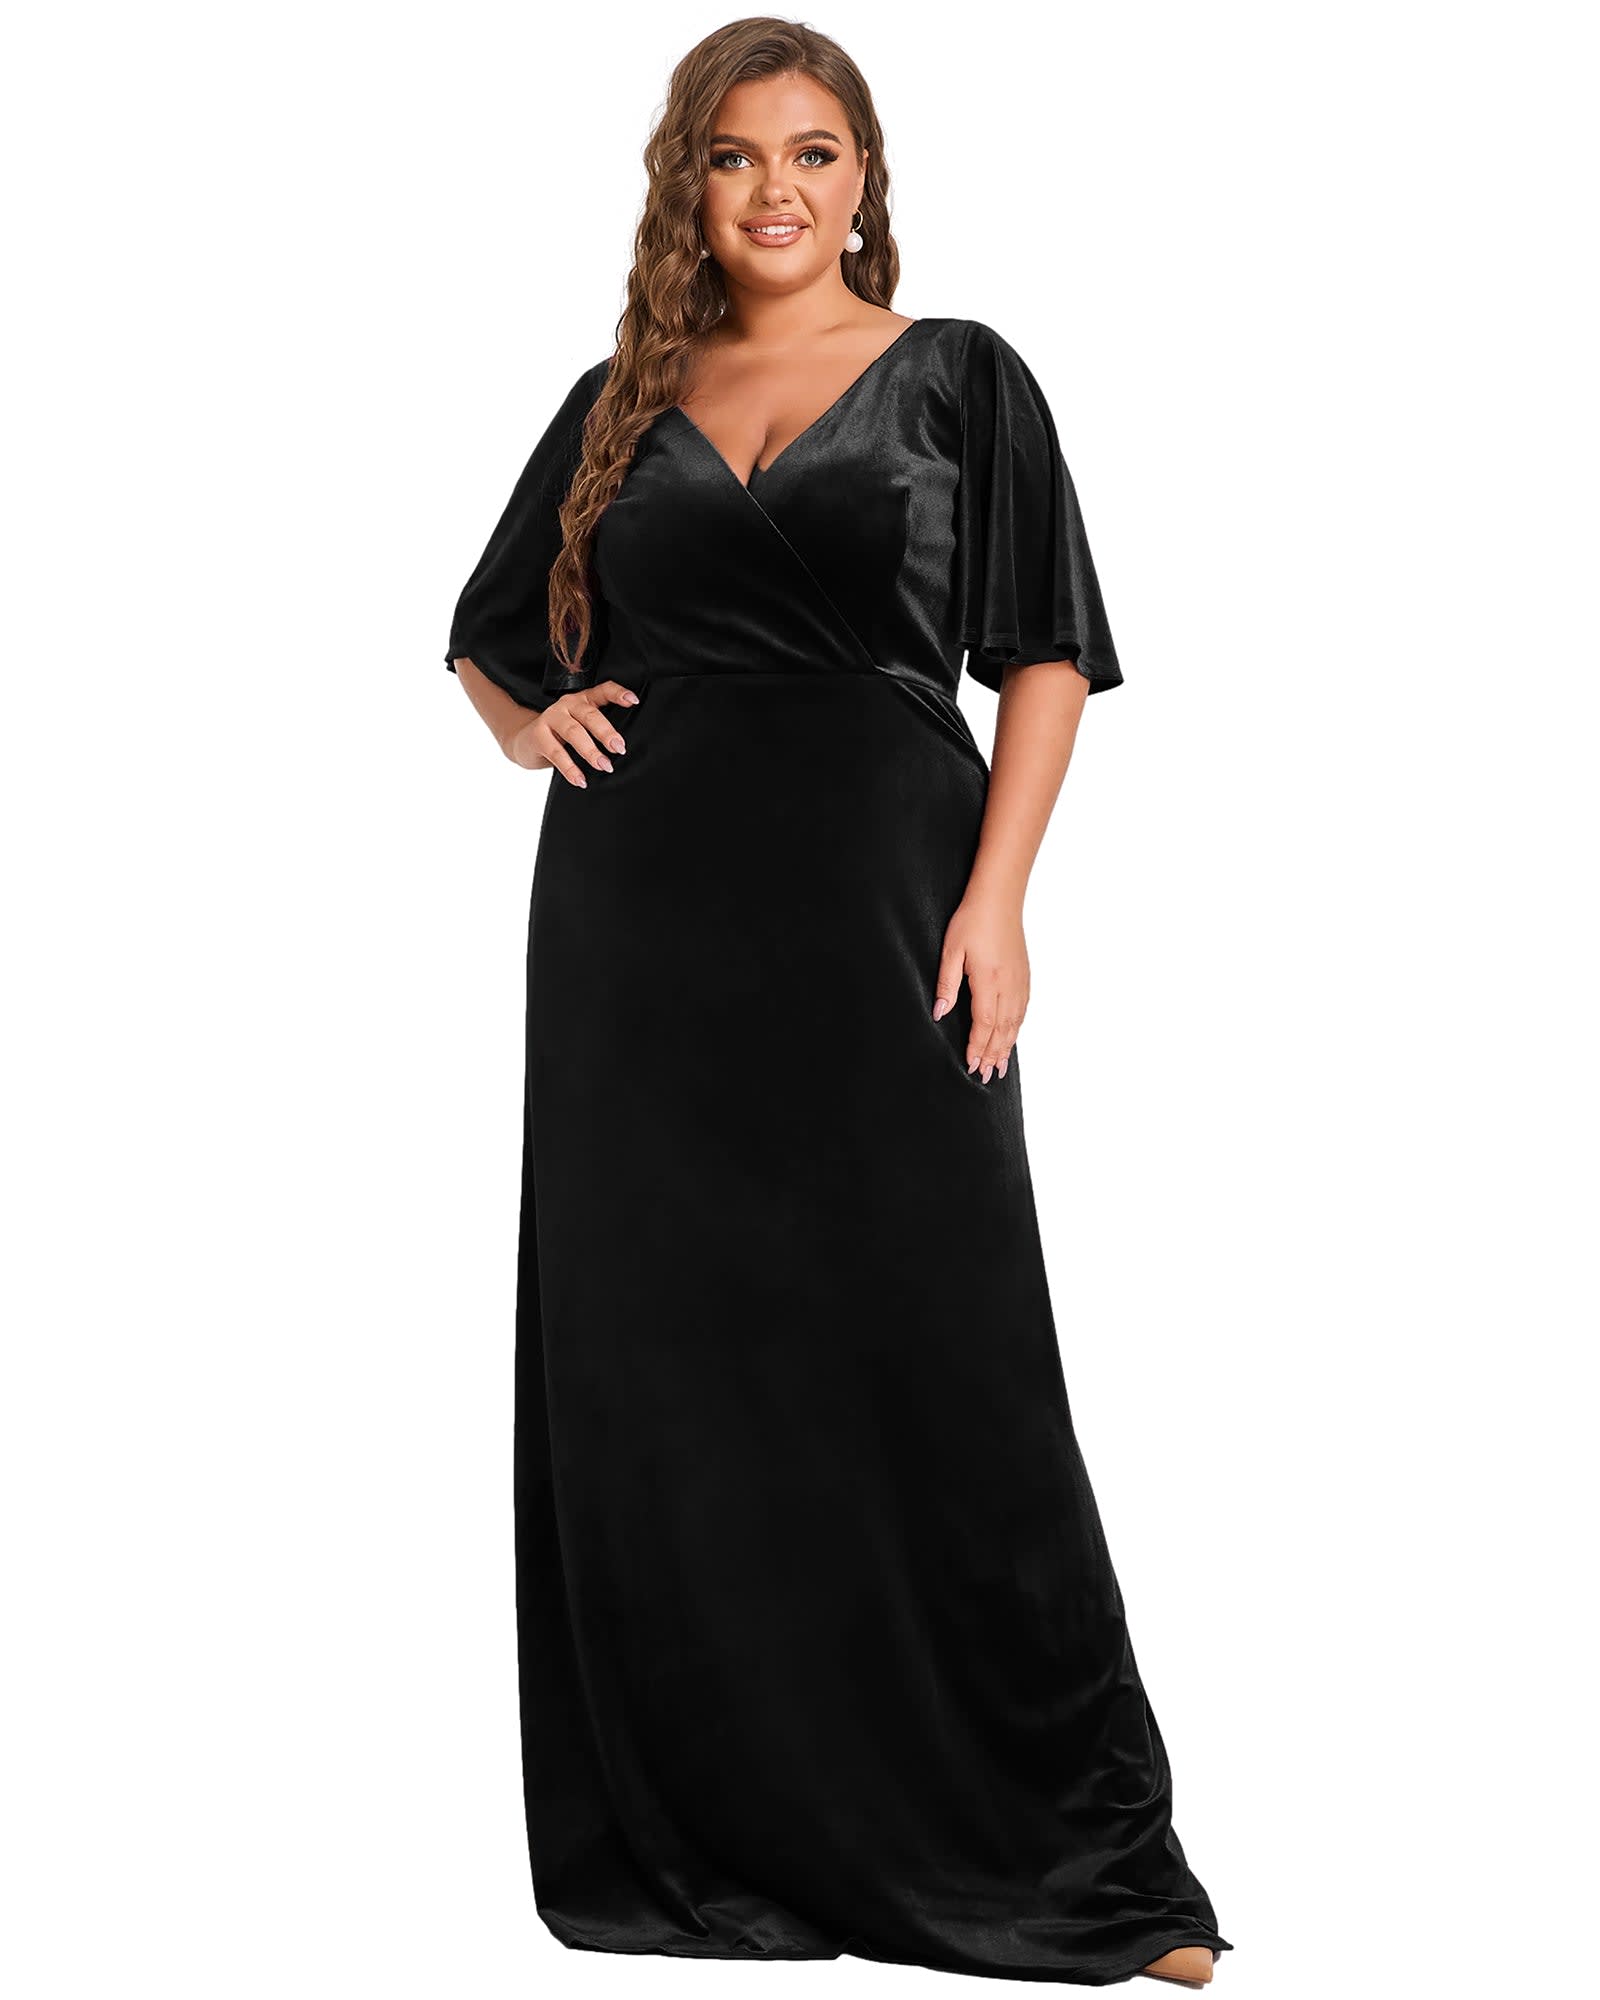 Elegant Double V Neck Velvet Party Dress with Sleeves | Black